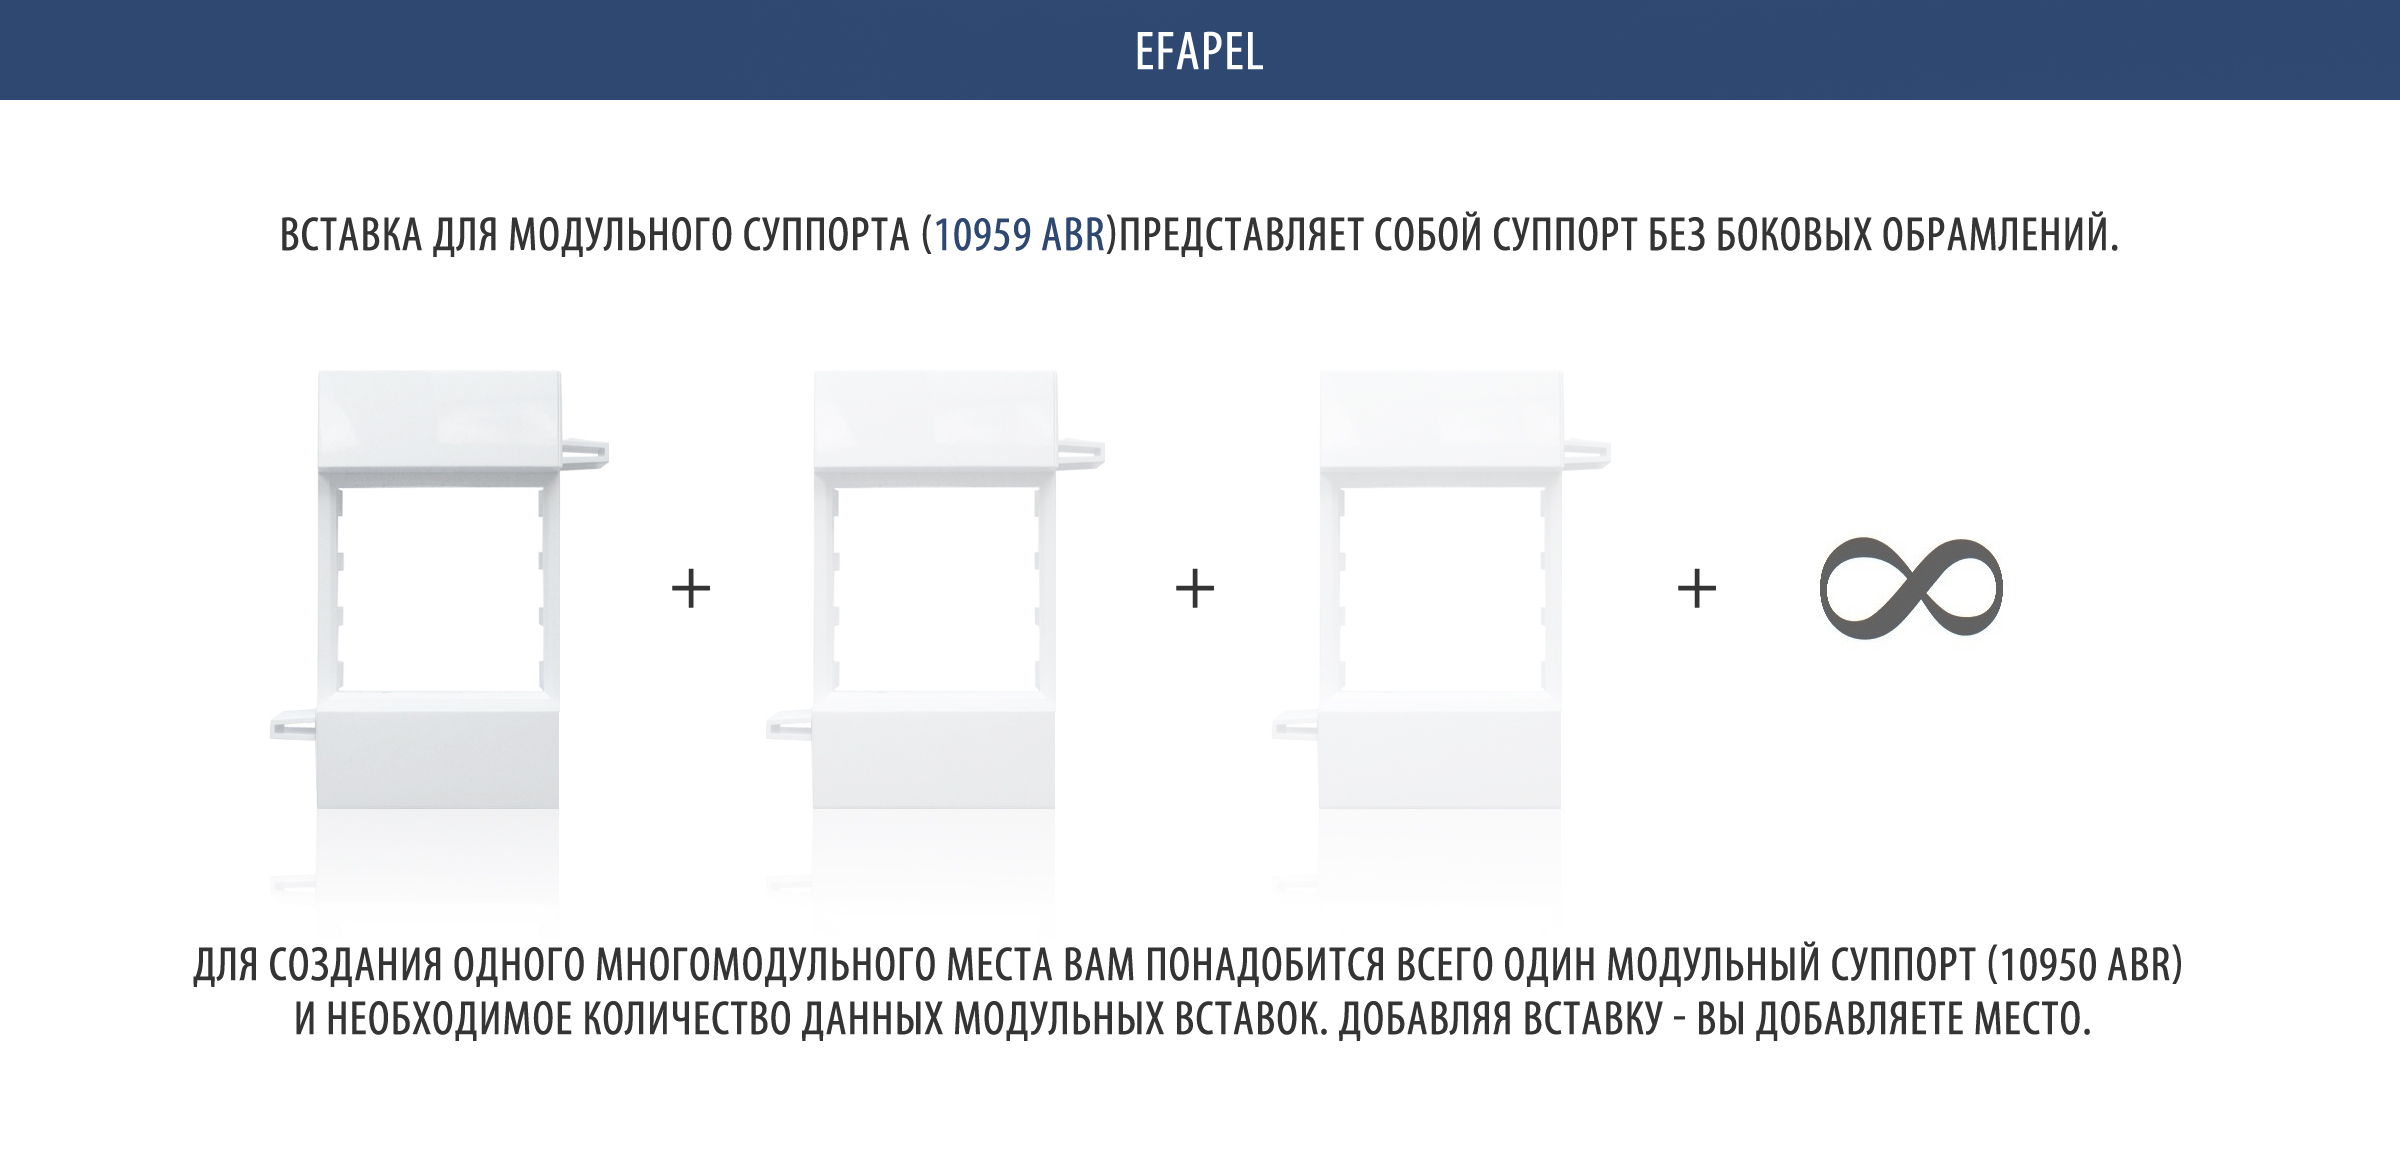 EFAPEL 10959 ABR вставки для модульного суппорта 10950 ABR